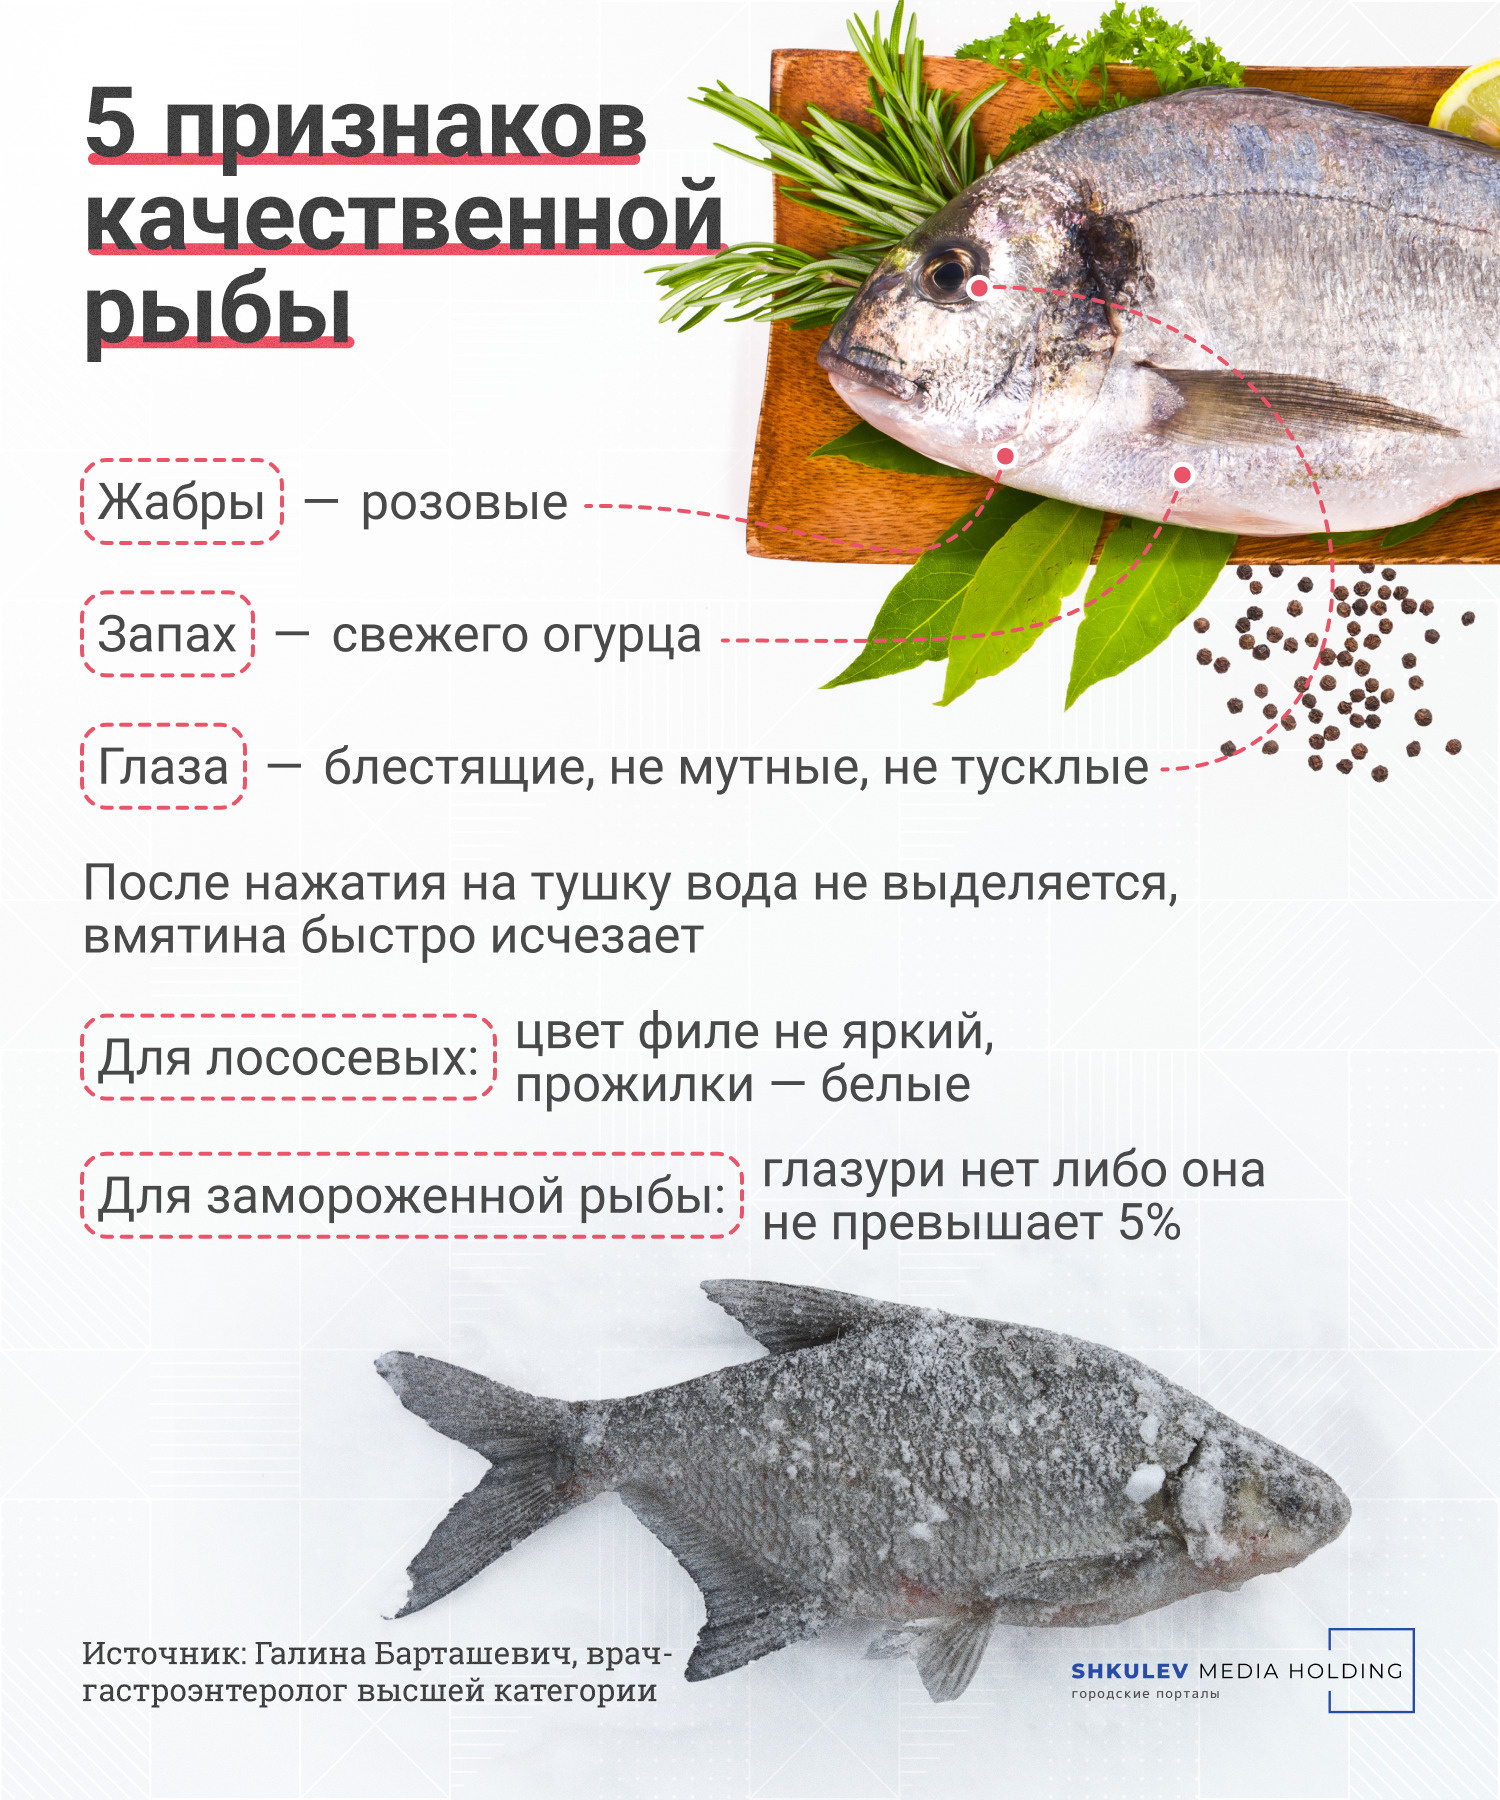 Определить рыбу по фотографии онлайн бесплатно без регистрации и смс